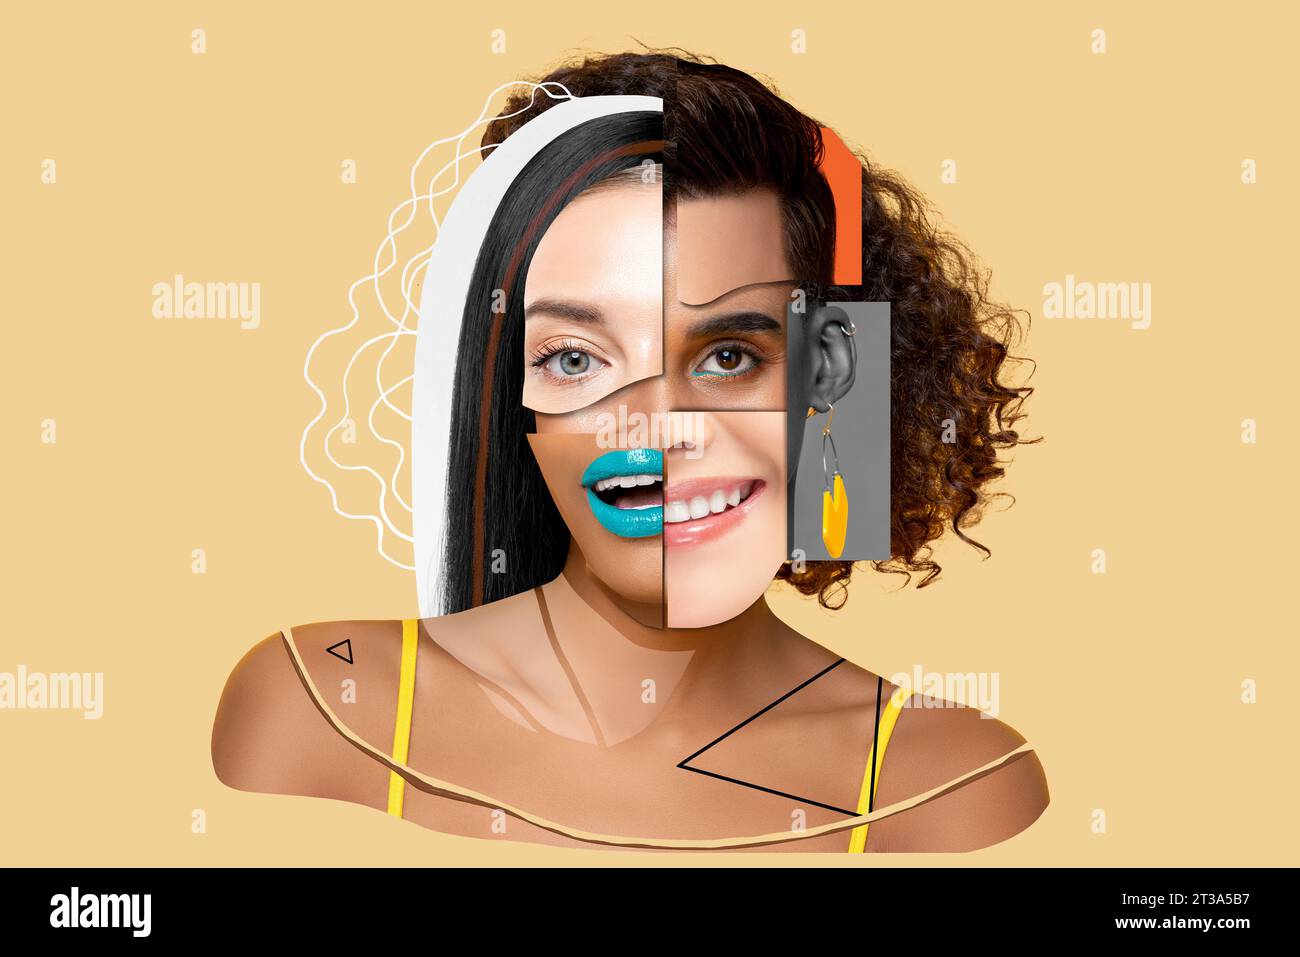 Collage Art Gesicht Design von multirassischen Menschen in verschiedenen Emotionen, Schönheit und Gleichberechtigung Konzept Stockfoto